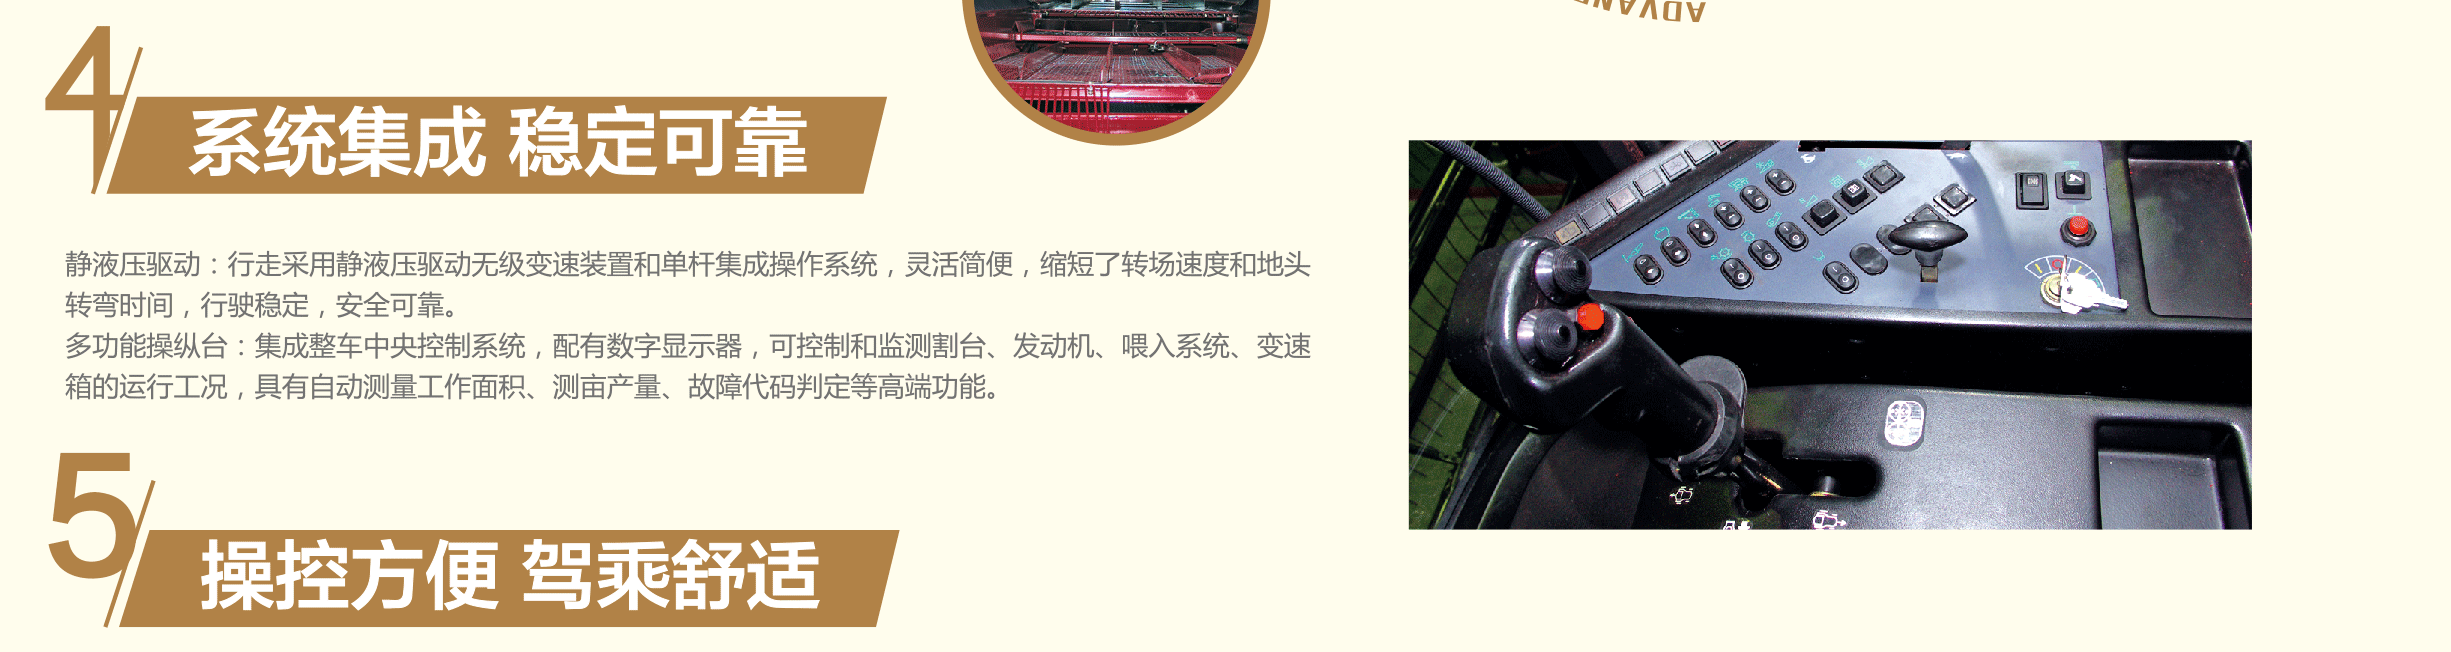 C-_Users_zhangbo_Desktop_images_收获机_06.gif